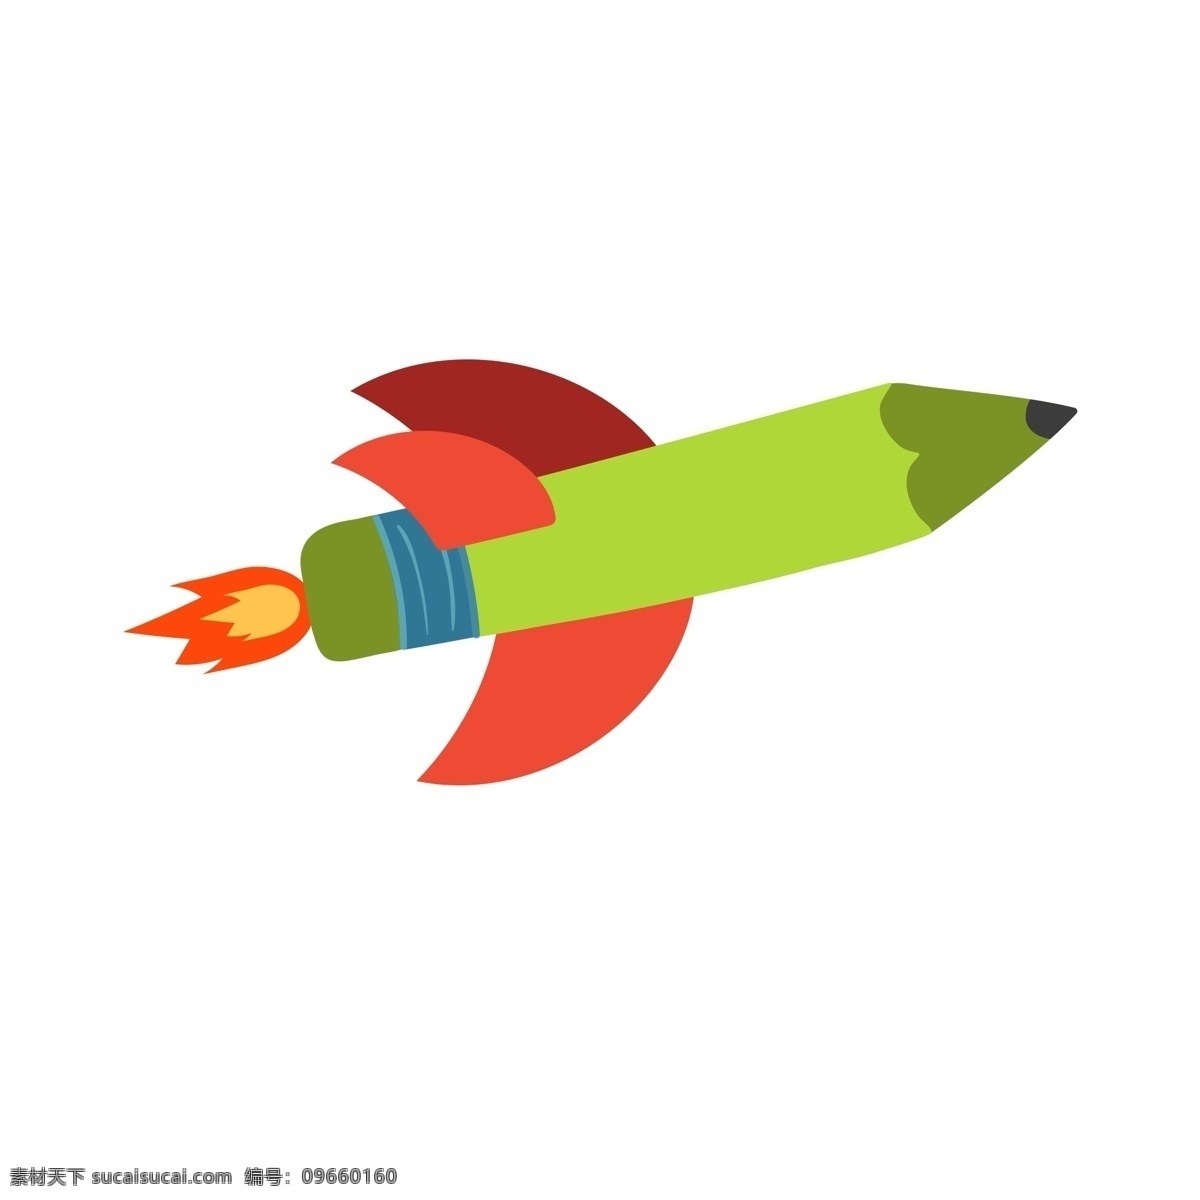 火箭 升天 绿色 发达 火花 商用 飞天 上天 红色 新奇